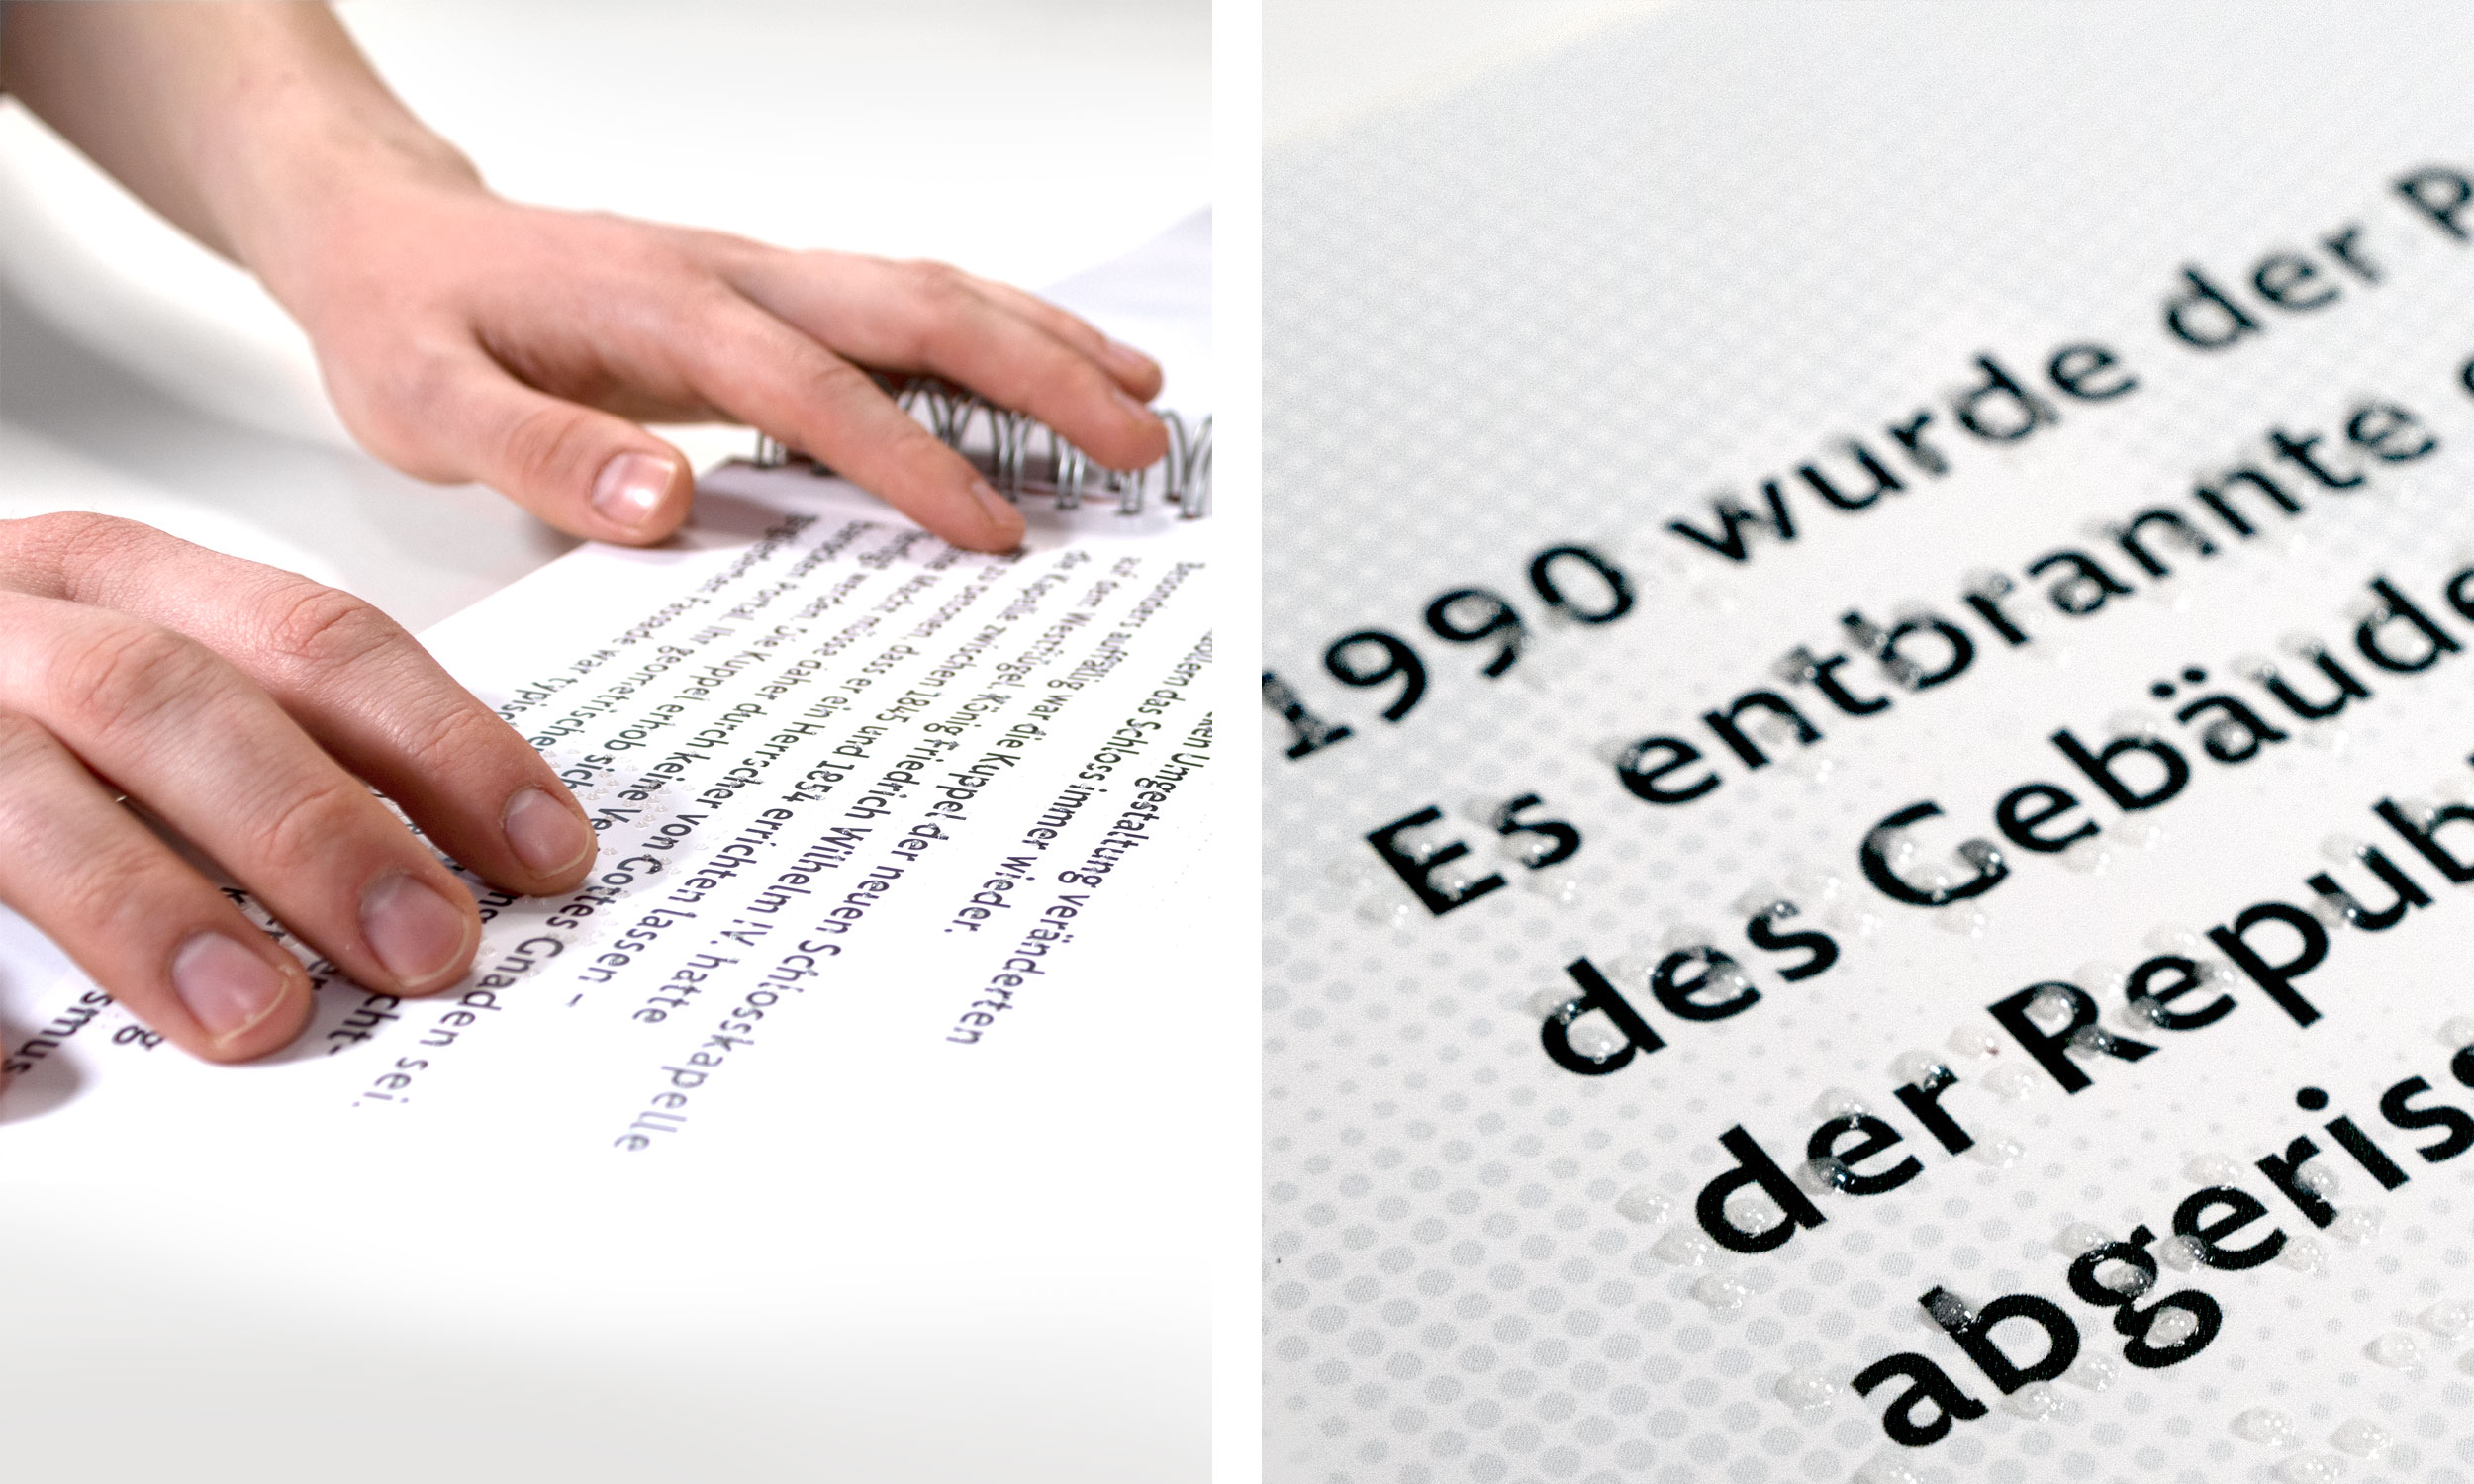 Links: Eine Person beim lesen der Brailleschrift auf einer Textseite des Tastbuche. Rechts: Nahaufnahme typografischer Details einer Textseite mit Schwarzschrift und transparenter Braille